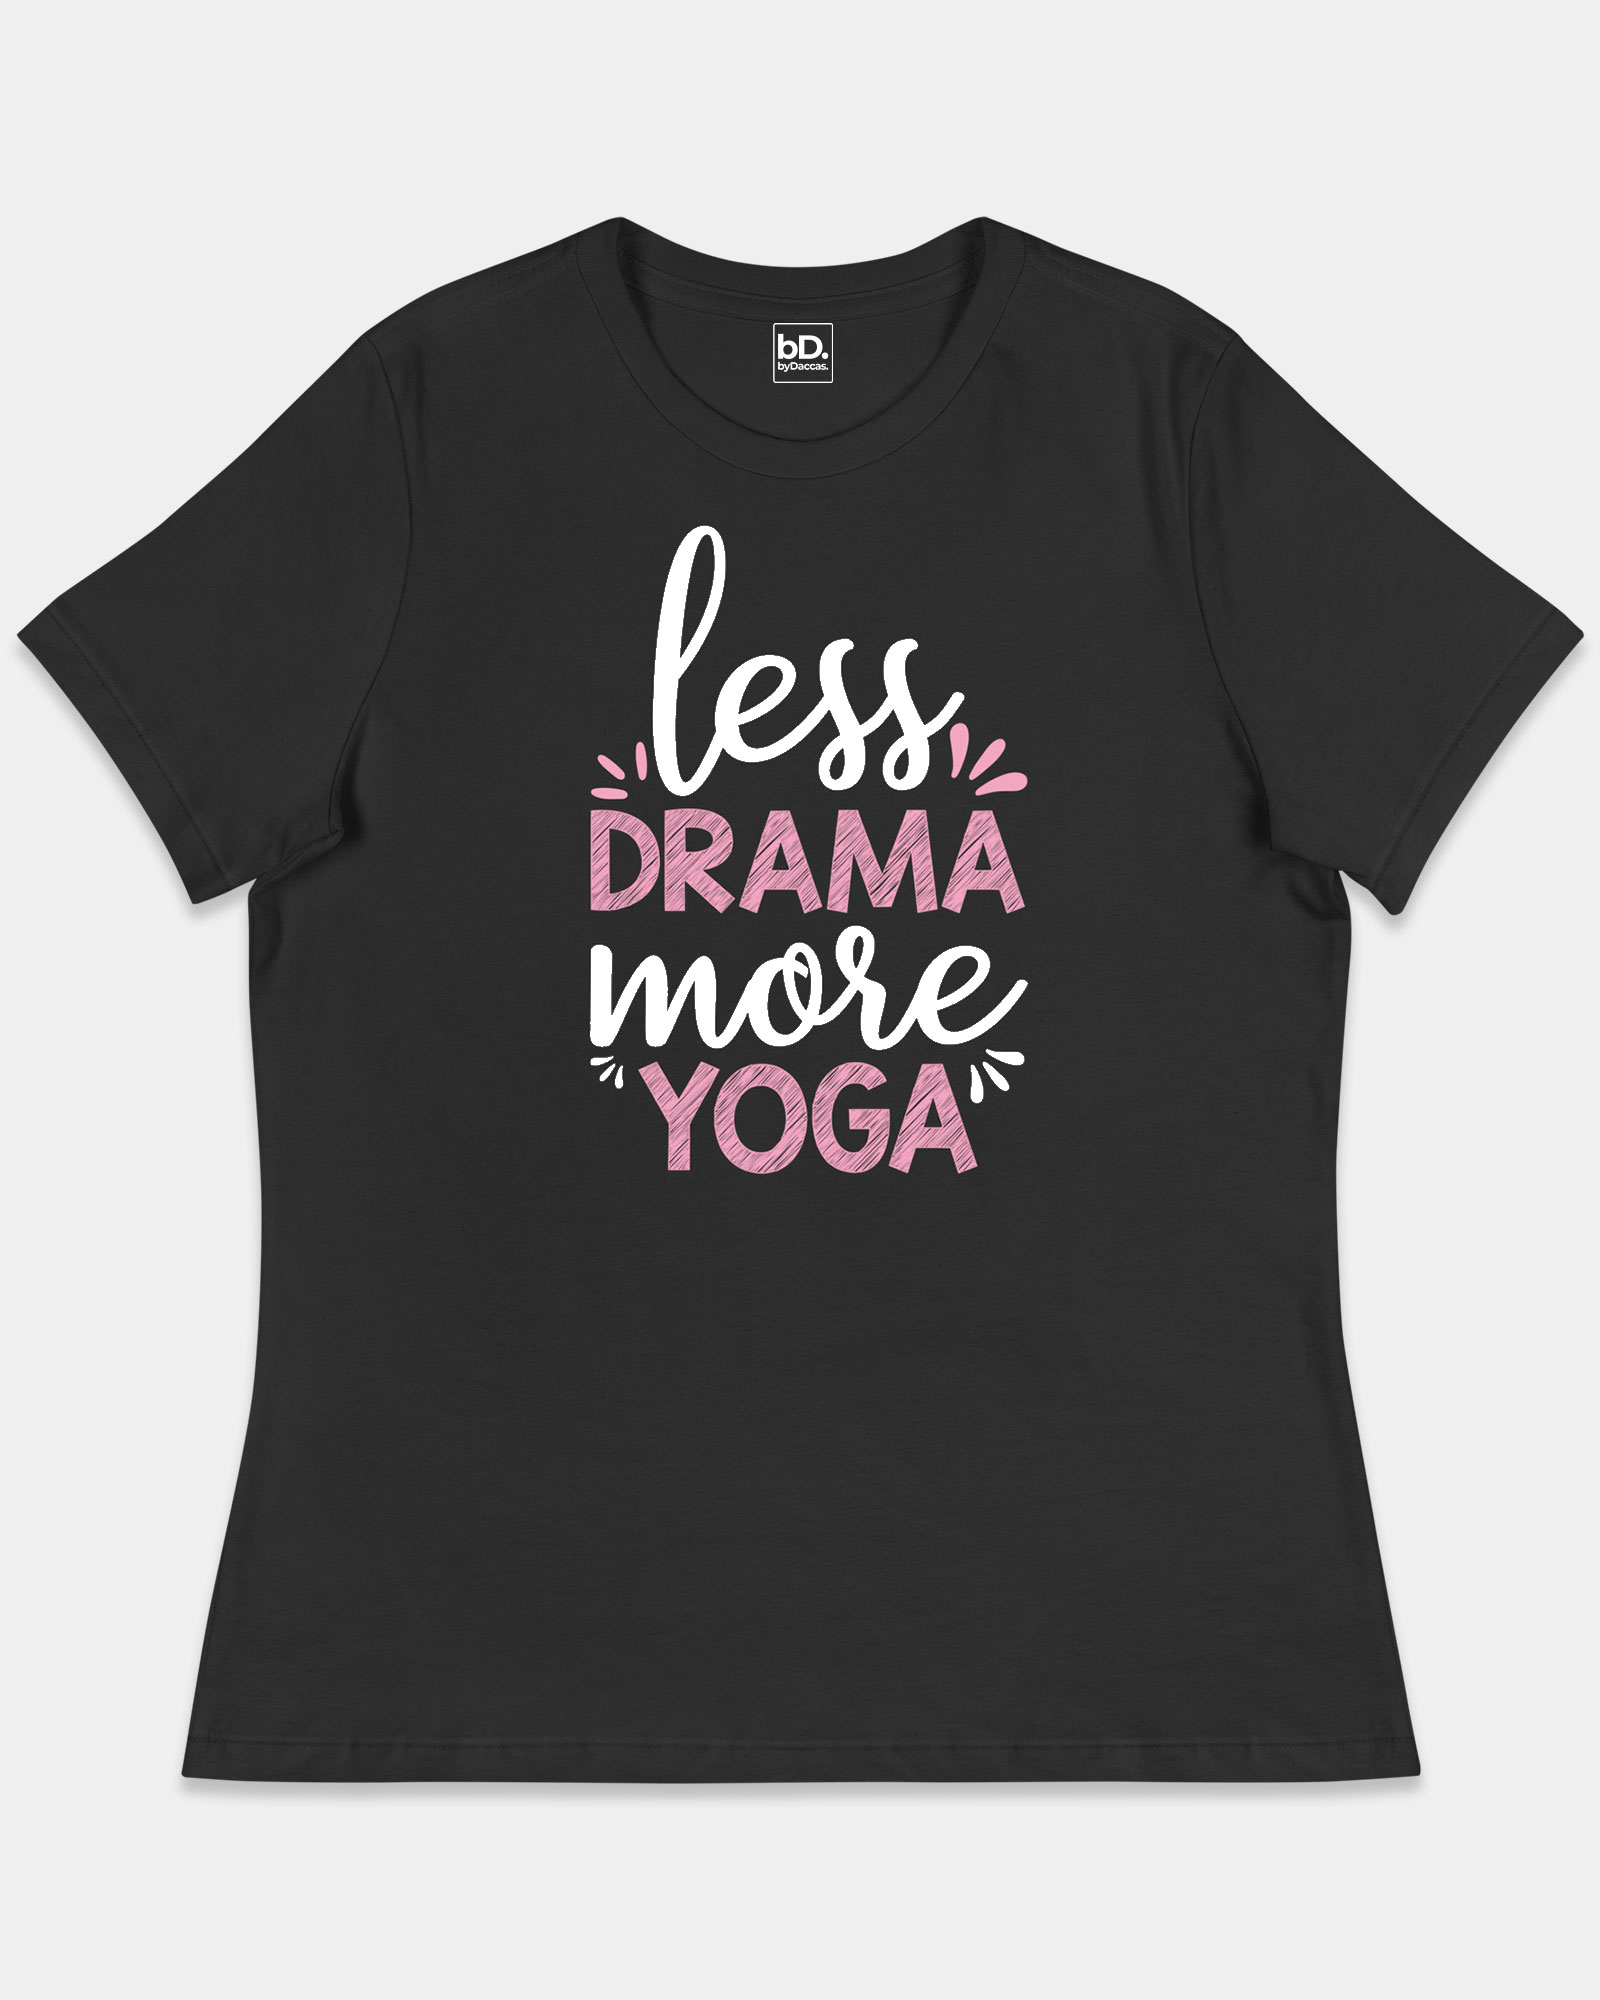 byDaccas. Love yoga